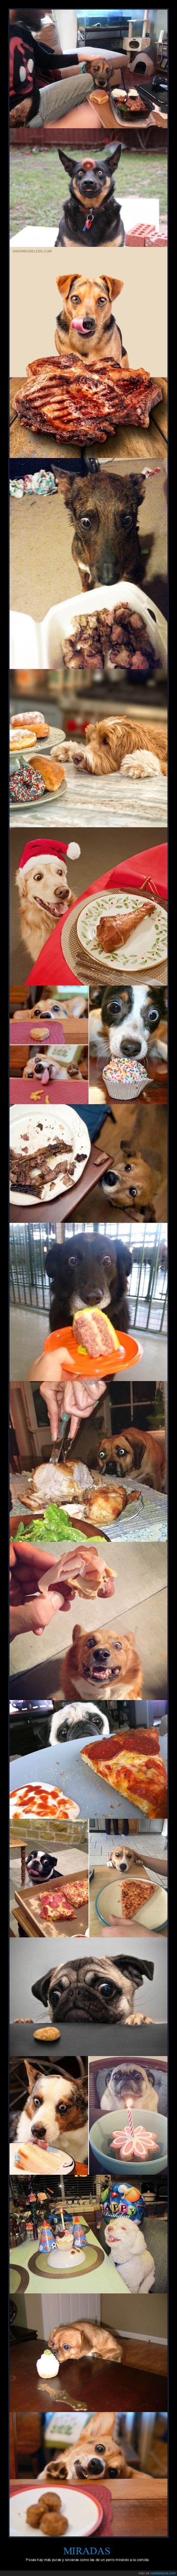 perros,mirando,comida